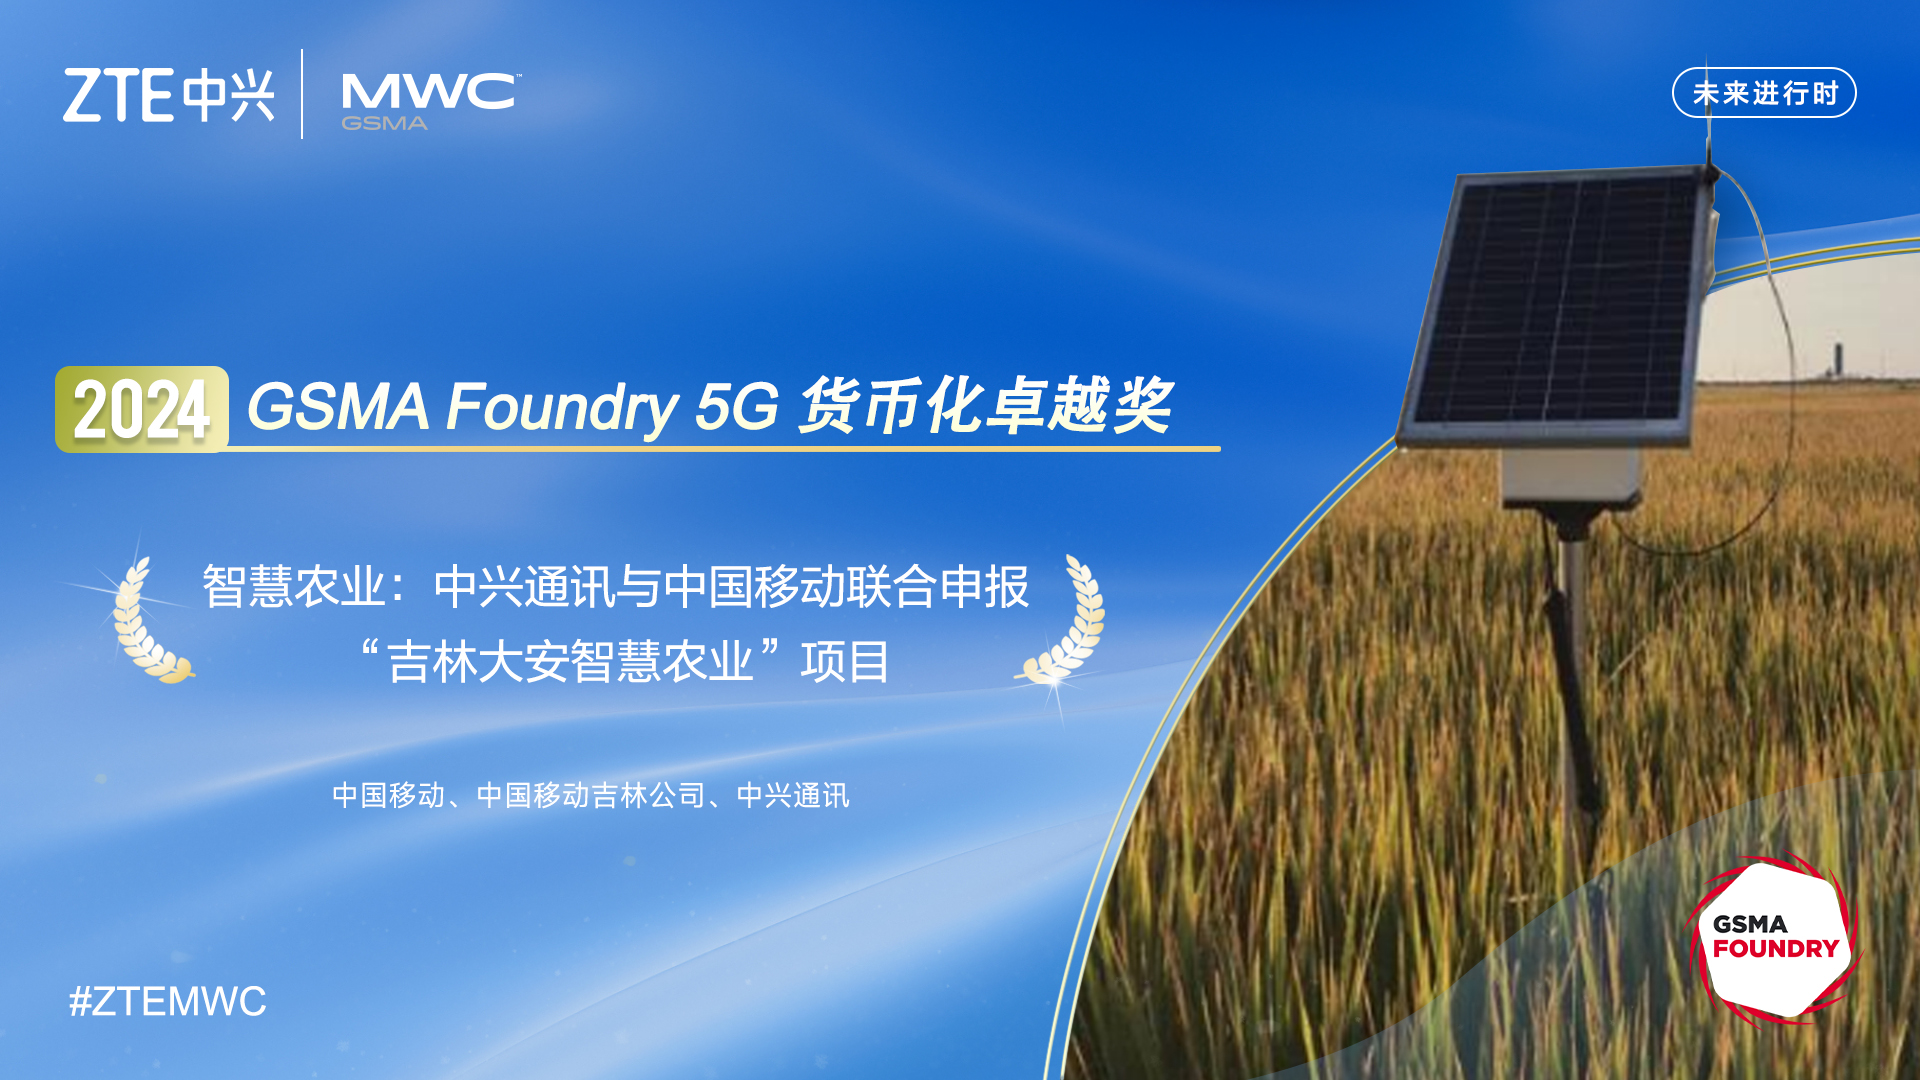 数智兴农 中国移动携手中兴通讯打造5G智慧农业项目蝉联GSMA Foundry大奖